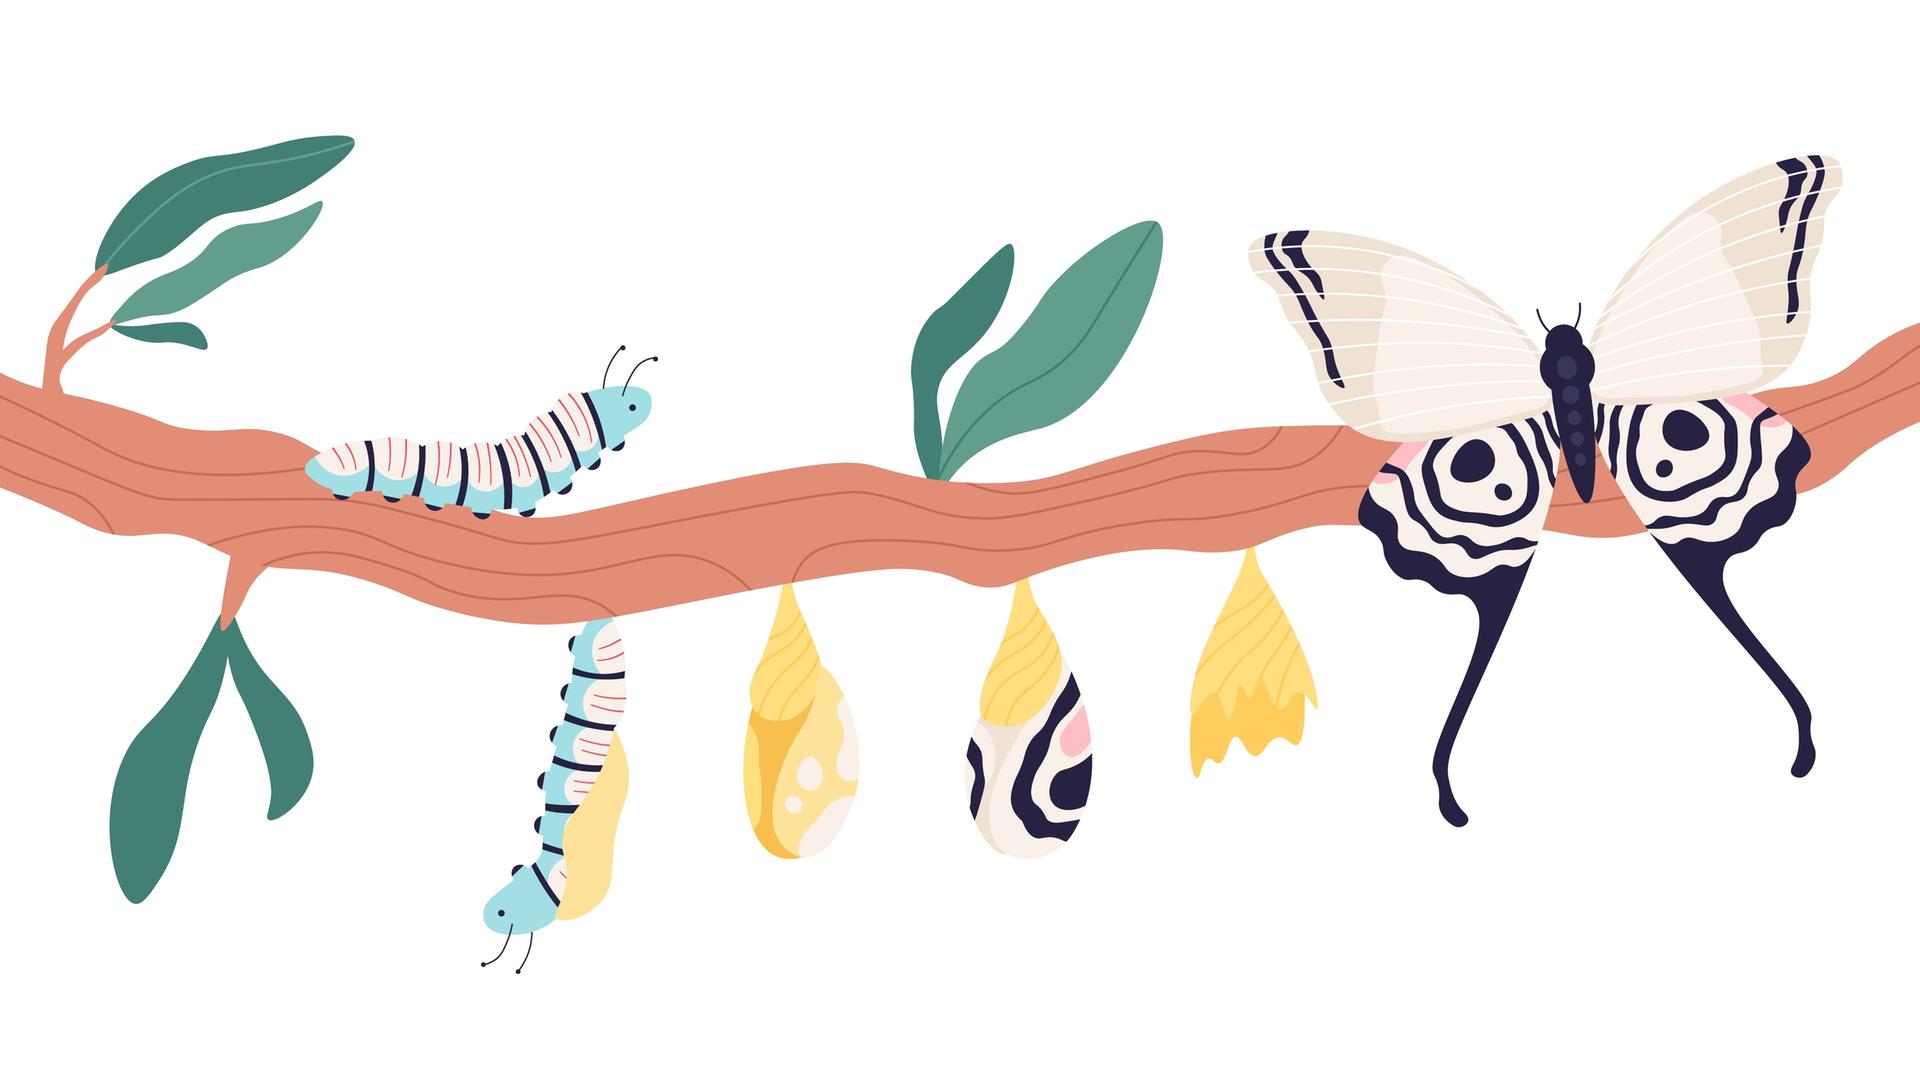 Illustration einer Metamorphose von Raupe bis Schmetterling. Zu sehen ist ein Zweig mit Blättern. Links sitzt eine Raupe. Weiter rechts folgen die verschiedenen Entwicklungsstufen. Ganz rechts sitzt ein Schmetterling.